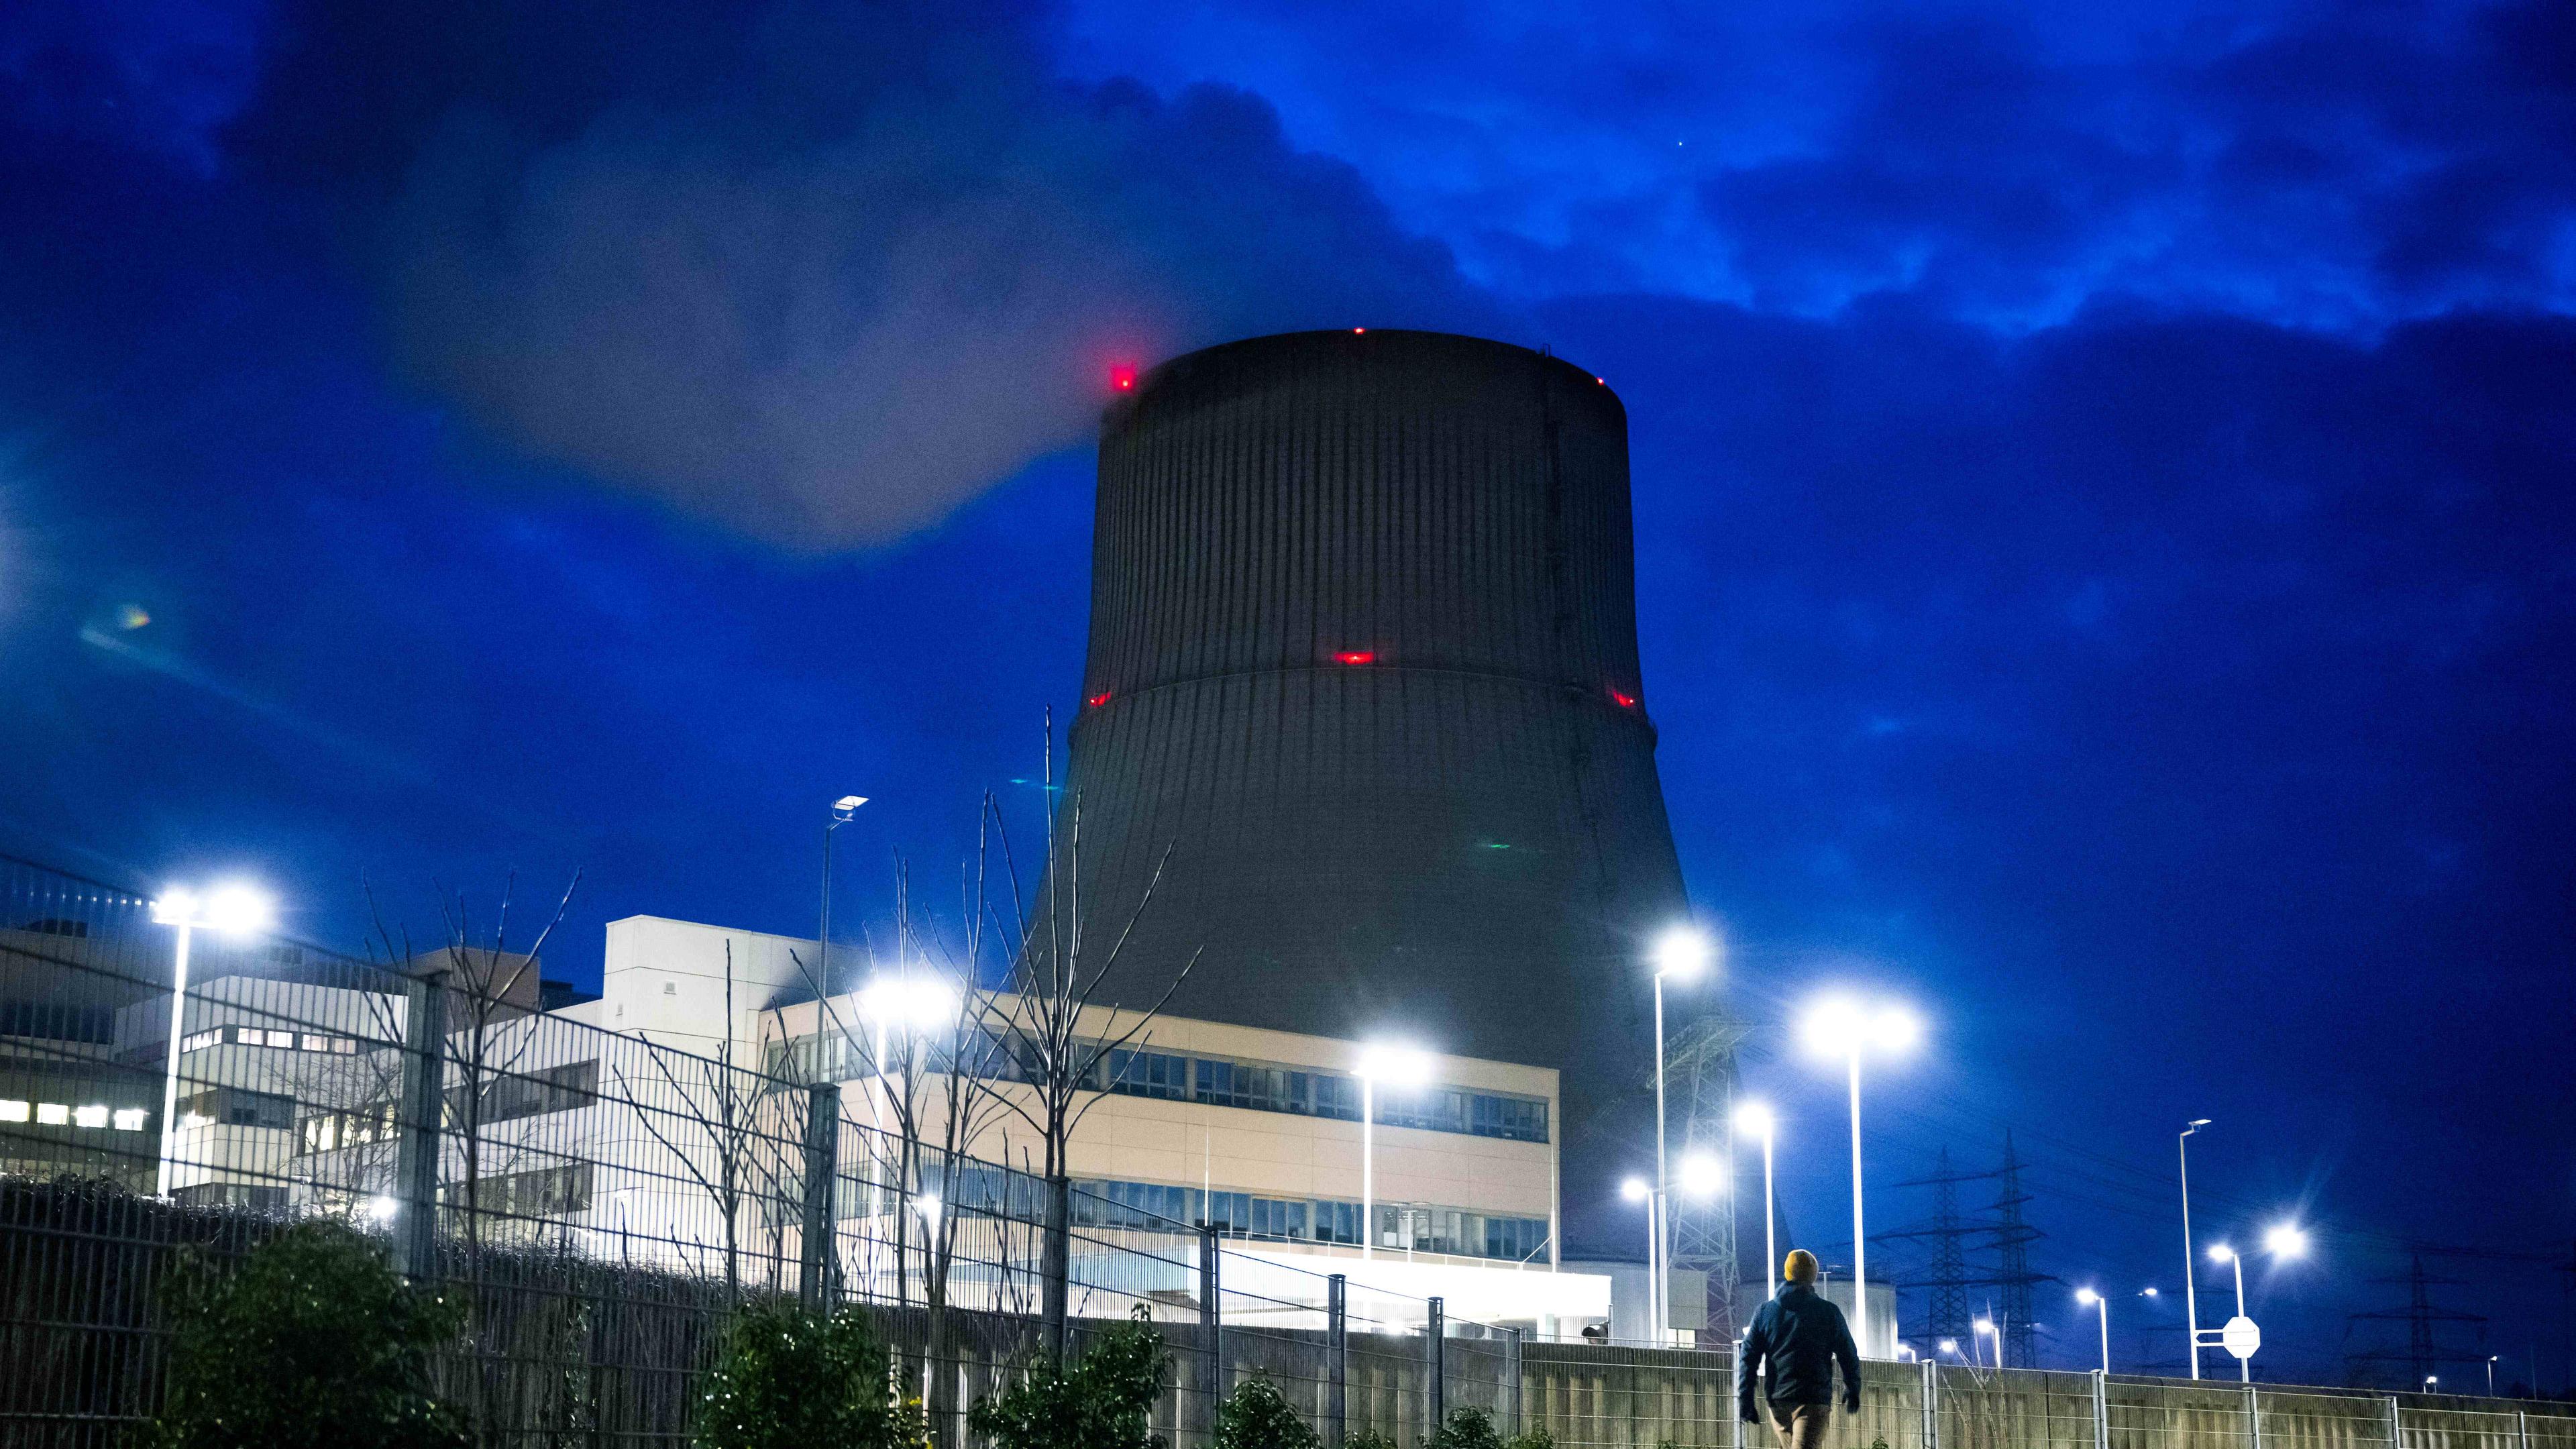 Das Kernkraftwerk Emsland bei Nacht